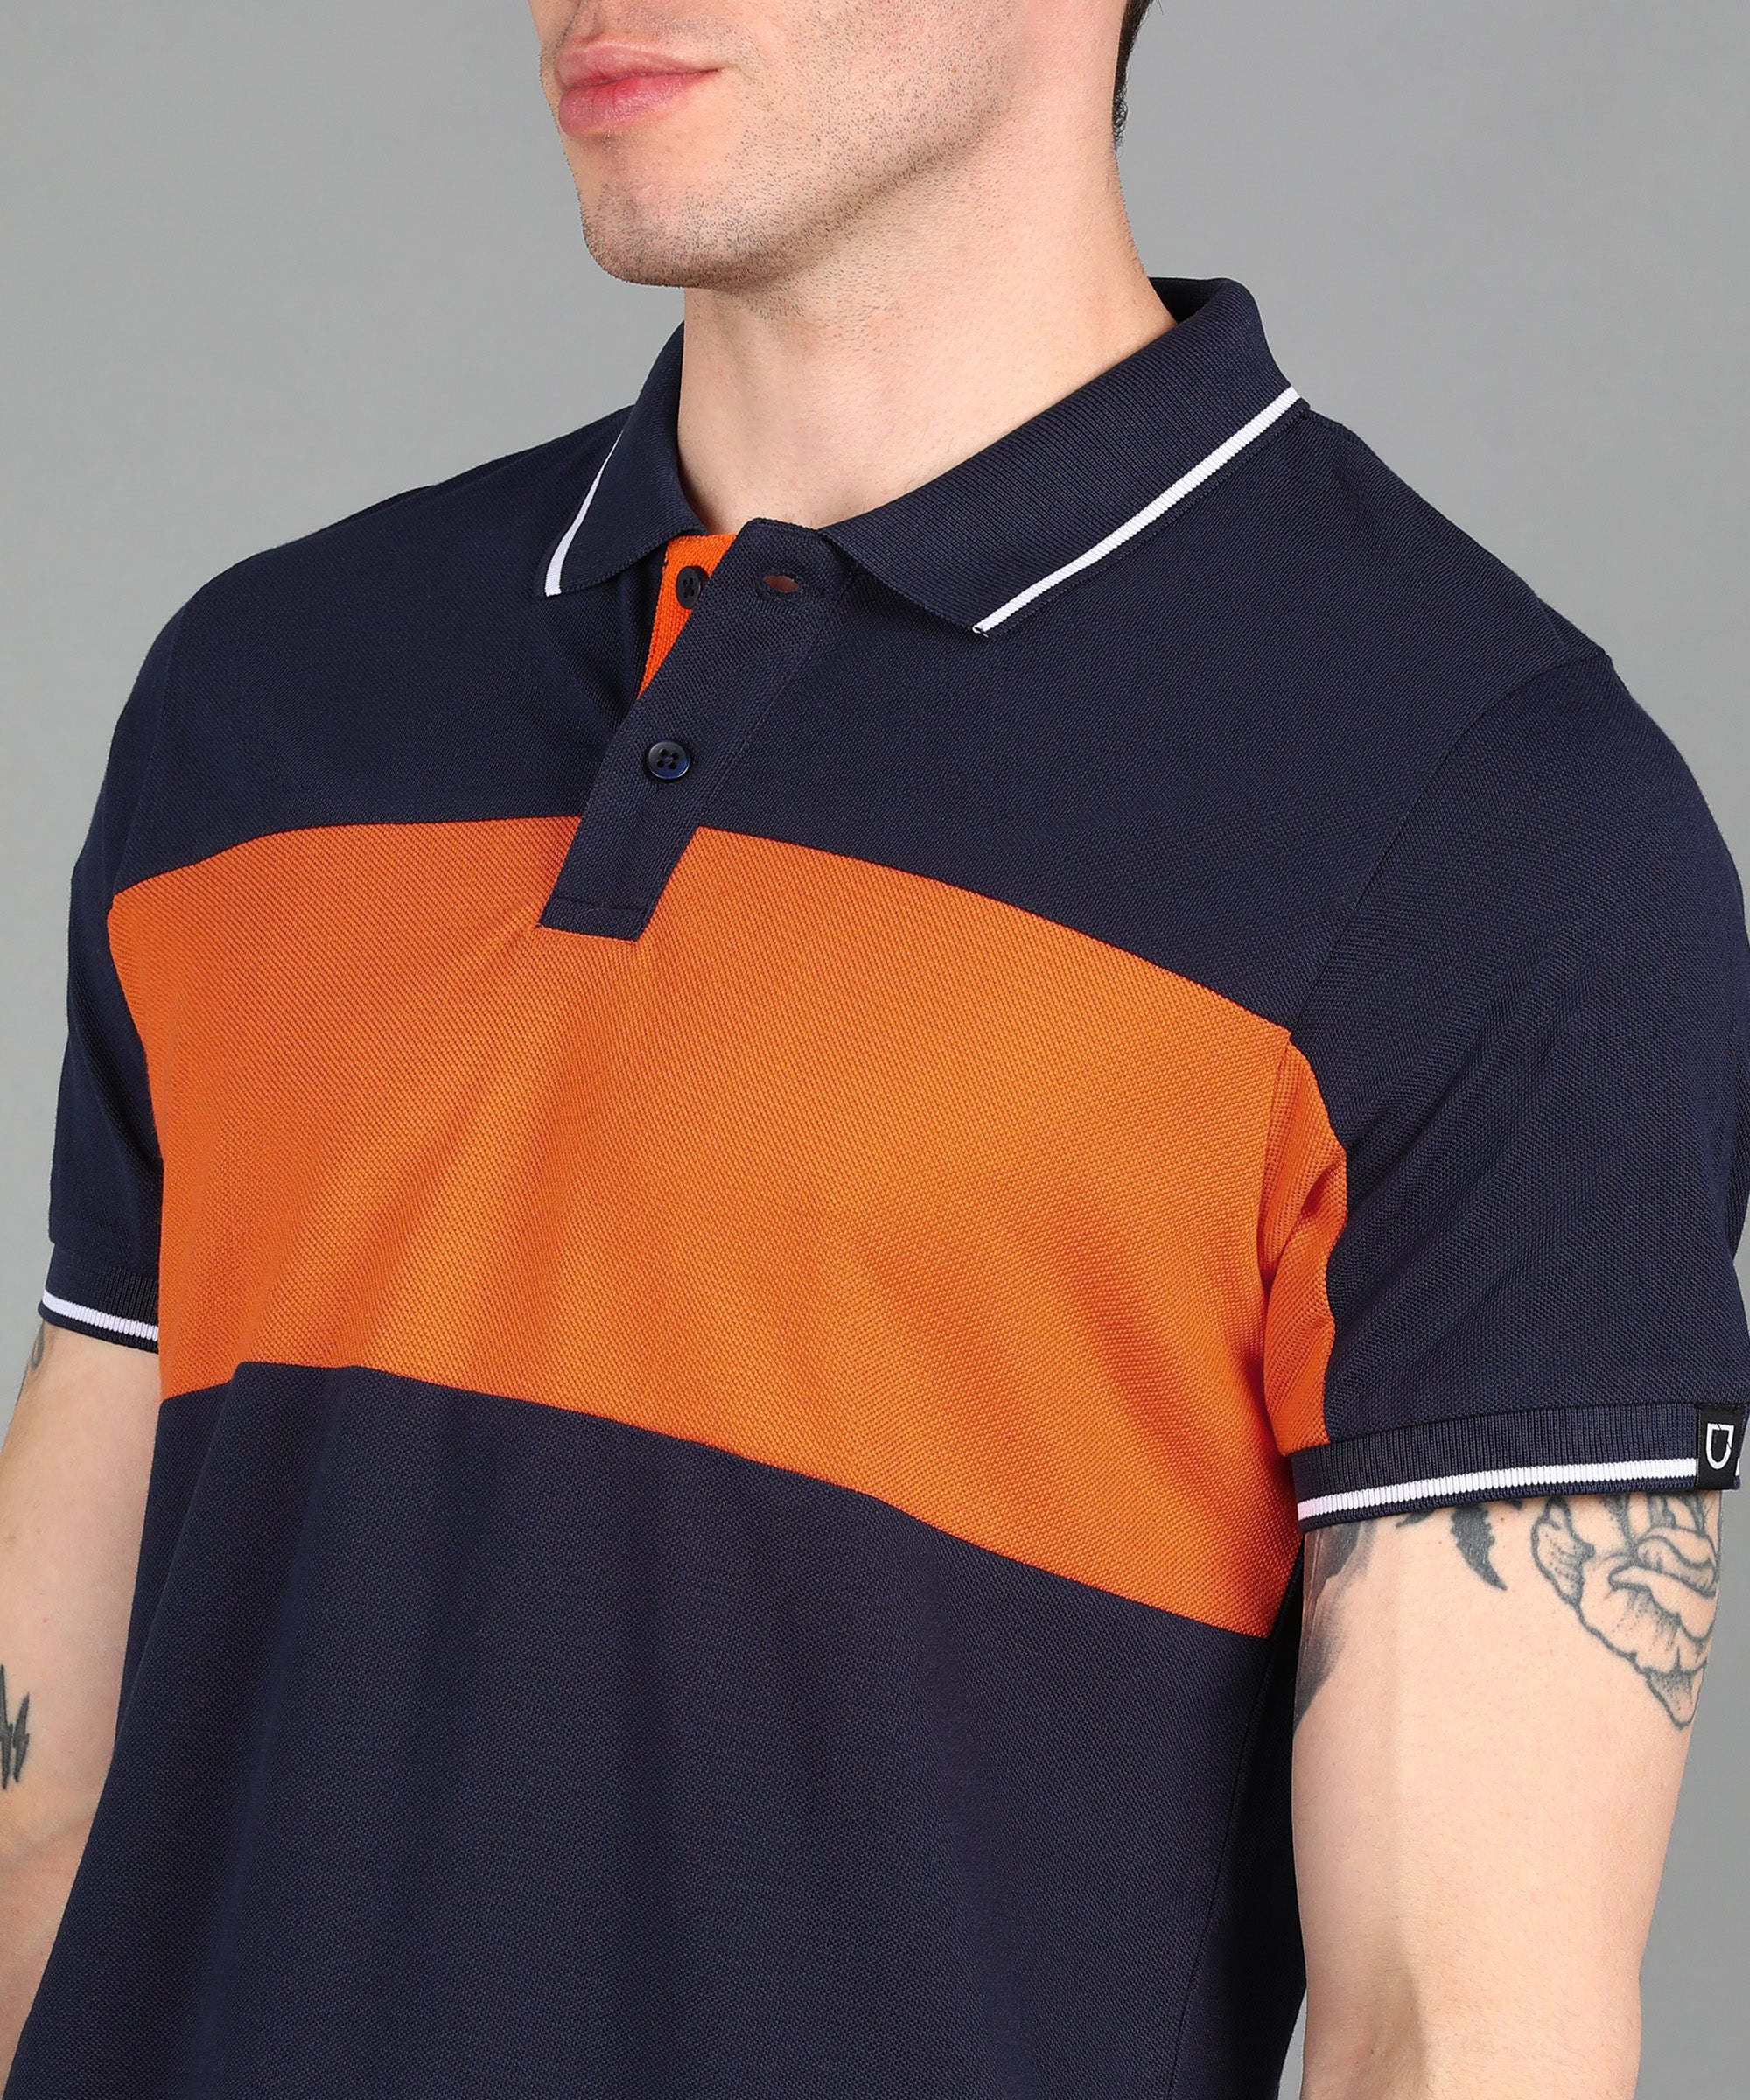 Men's Navy, Orange Colour-Block Slim Fit Half Sleeve Cotton Polo T-Shirt